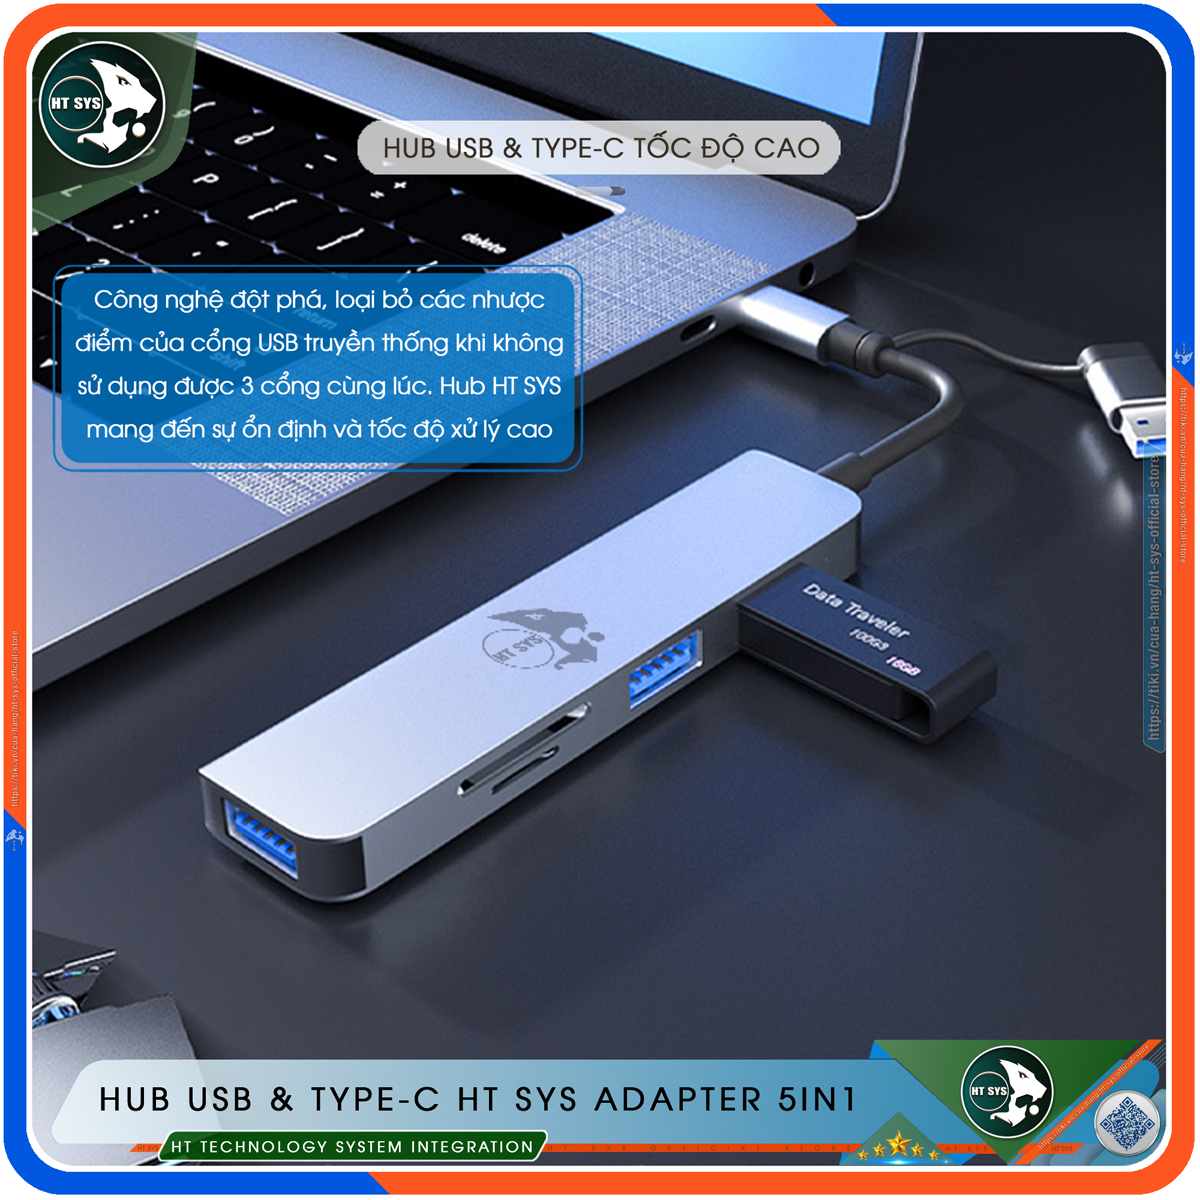 Hub USB 3.0 Và Hub Type C HT SYS Adapter 5in1 - Cổng Chia USB Mở Rộng Kết Nối Tốc Độ Cao Dành Cho Macbook, Laptop, PC - Hub Chuyển Đổi USB Type-C Hỗ Trợ Sạc Pin, Kết Nối Đa Năng ổ Cứng, Bàn Phím, Chuột, Máy In, Ổ Chia USB - Hàng Chính Hãng